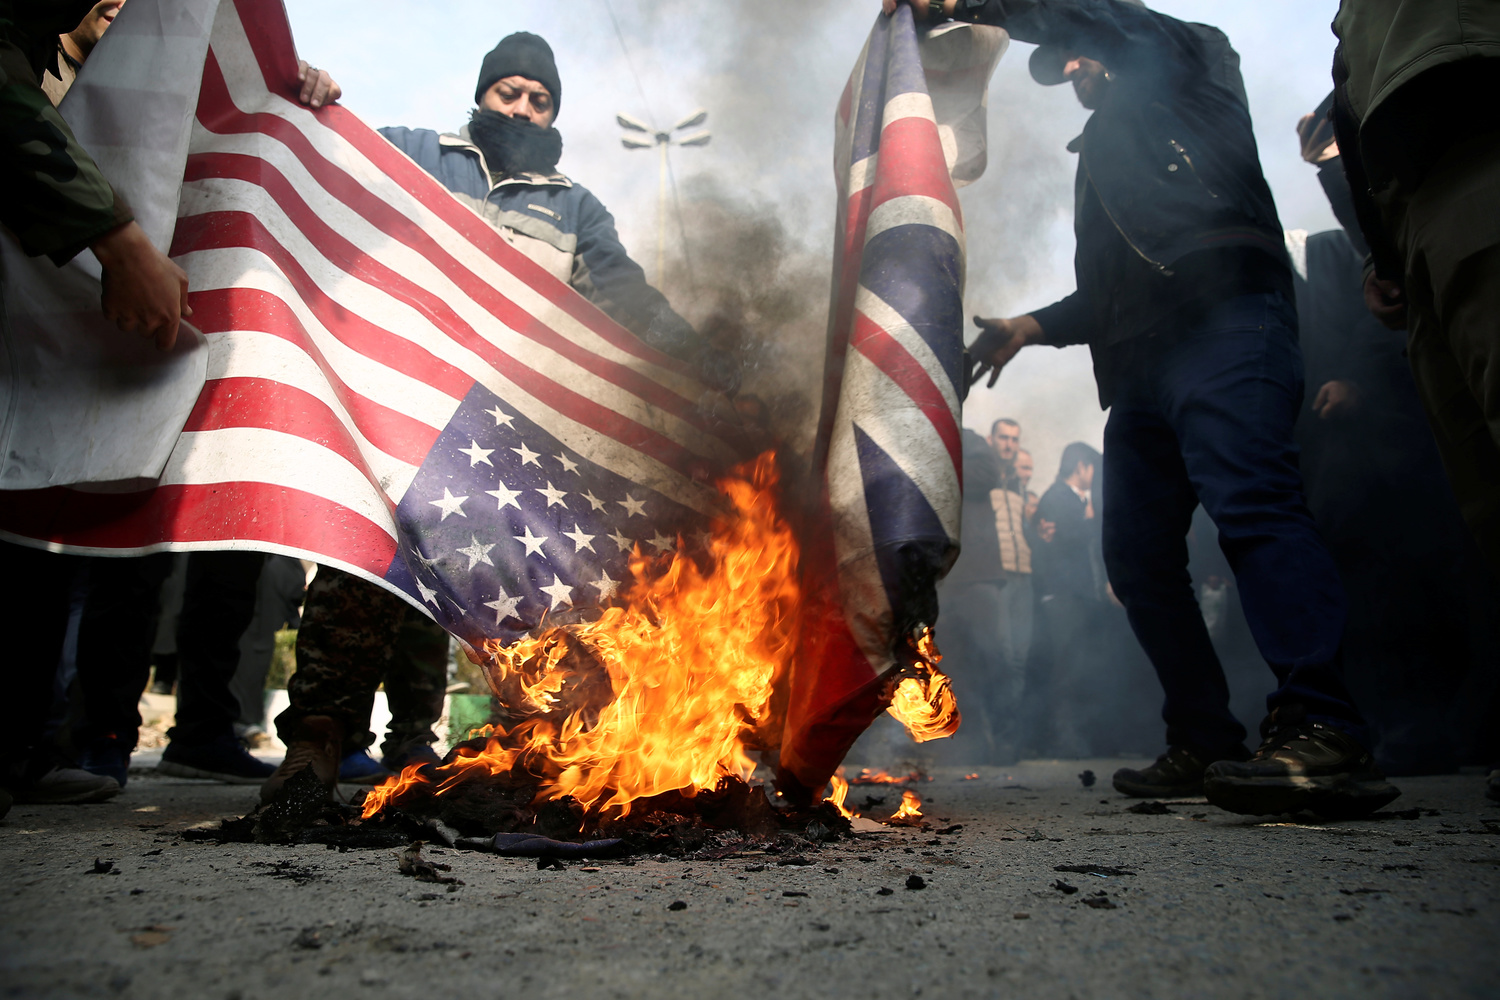 I manifestanti bruciano le bandiere statunitensi e britanniche durante una protesta contro l'assassinio del generale iraniano Qassem Soleimani, capo delle Quds Force, e del comandante della milizia irachena Abu Mahdi al-Muhandis, uccisi in un attacco aereo all'aeroporto di Baghdad, a Teheran, Iran, 3 gennaio 2020. WANA (West Asia News Agency)/Nazanin Tabatabaee tramite REUTERS